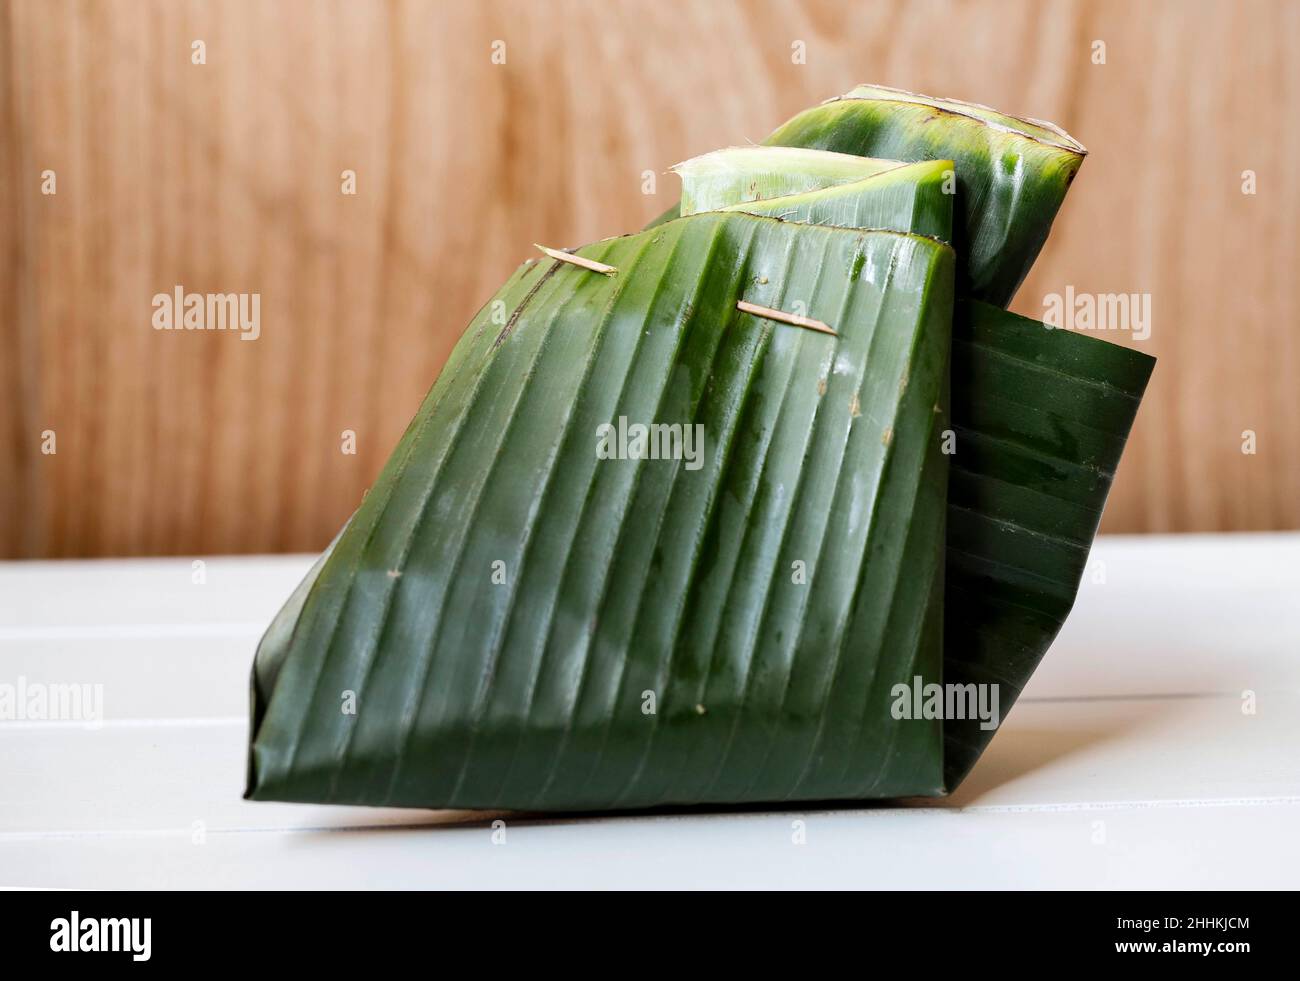 Indonesische Kunstfolie mit Bananenblatt. In der Regel Reis oder Snack innen. Go Green Wrapping Verpackung Stockfoto